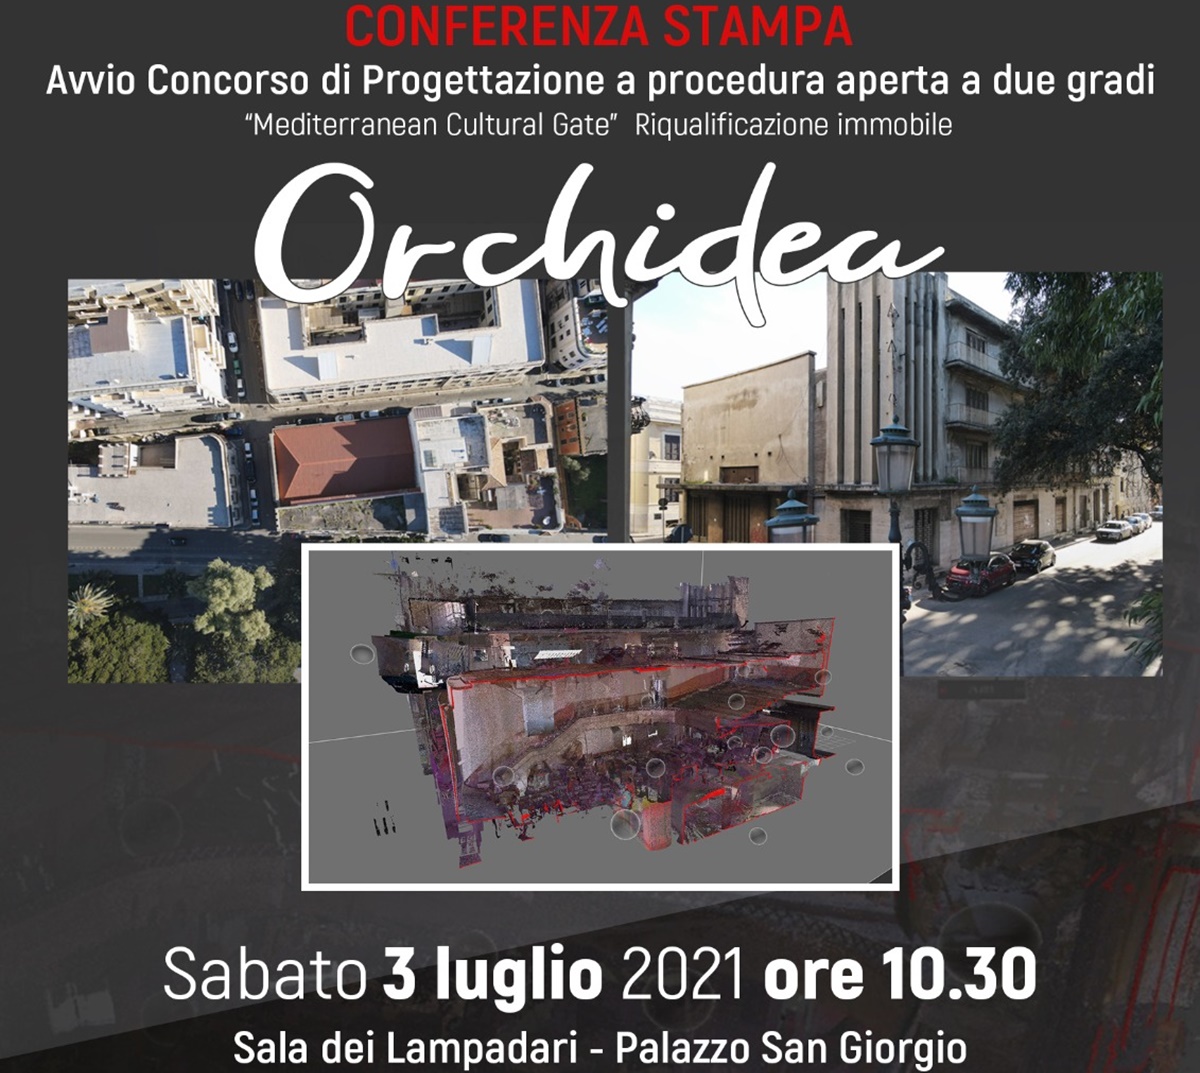 Ex cinema Orchidea, oggi la presentazione del concorso di progettazione